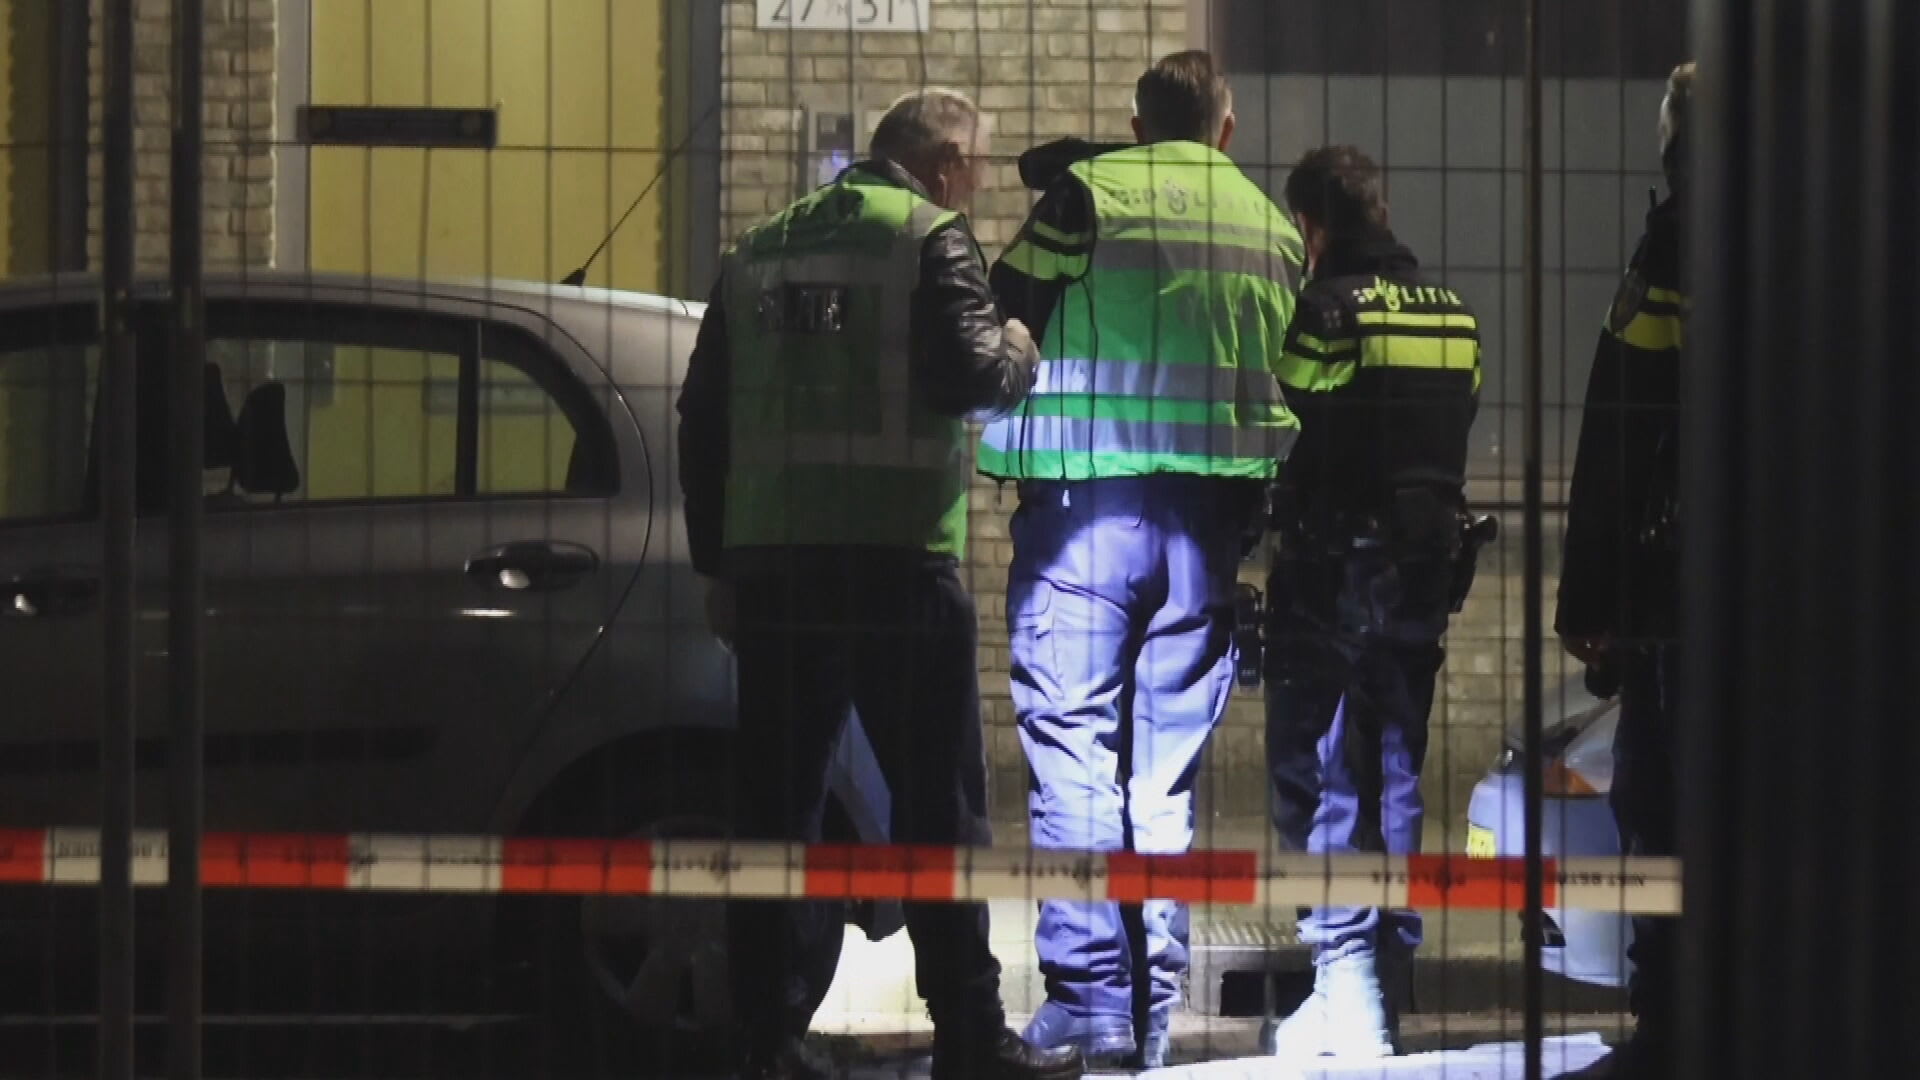 Buurt in Den Haag opgeschrikt door bloederige explosie: 'Er lag hier een hand'